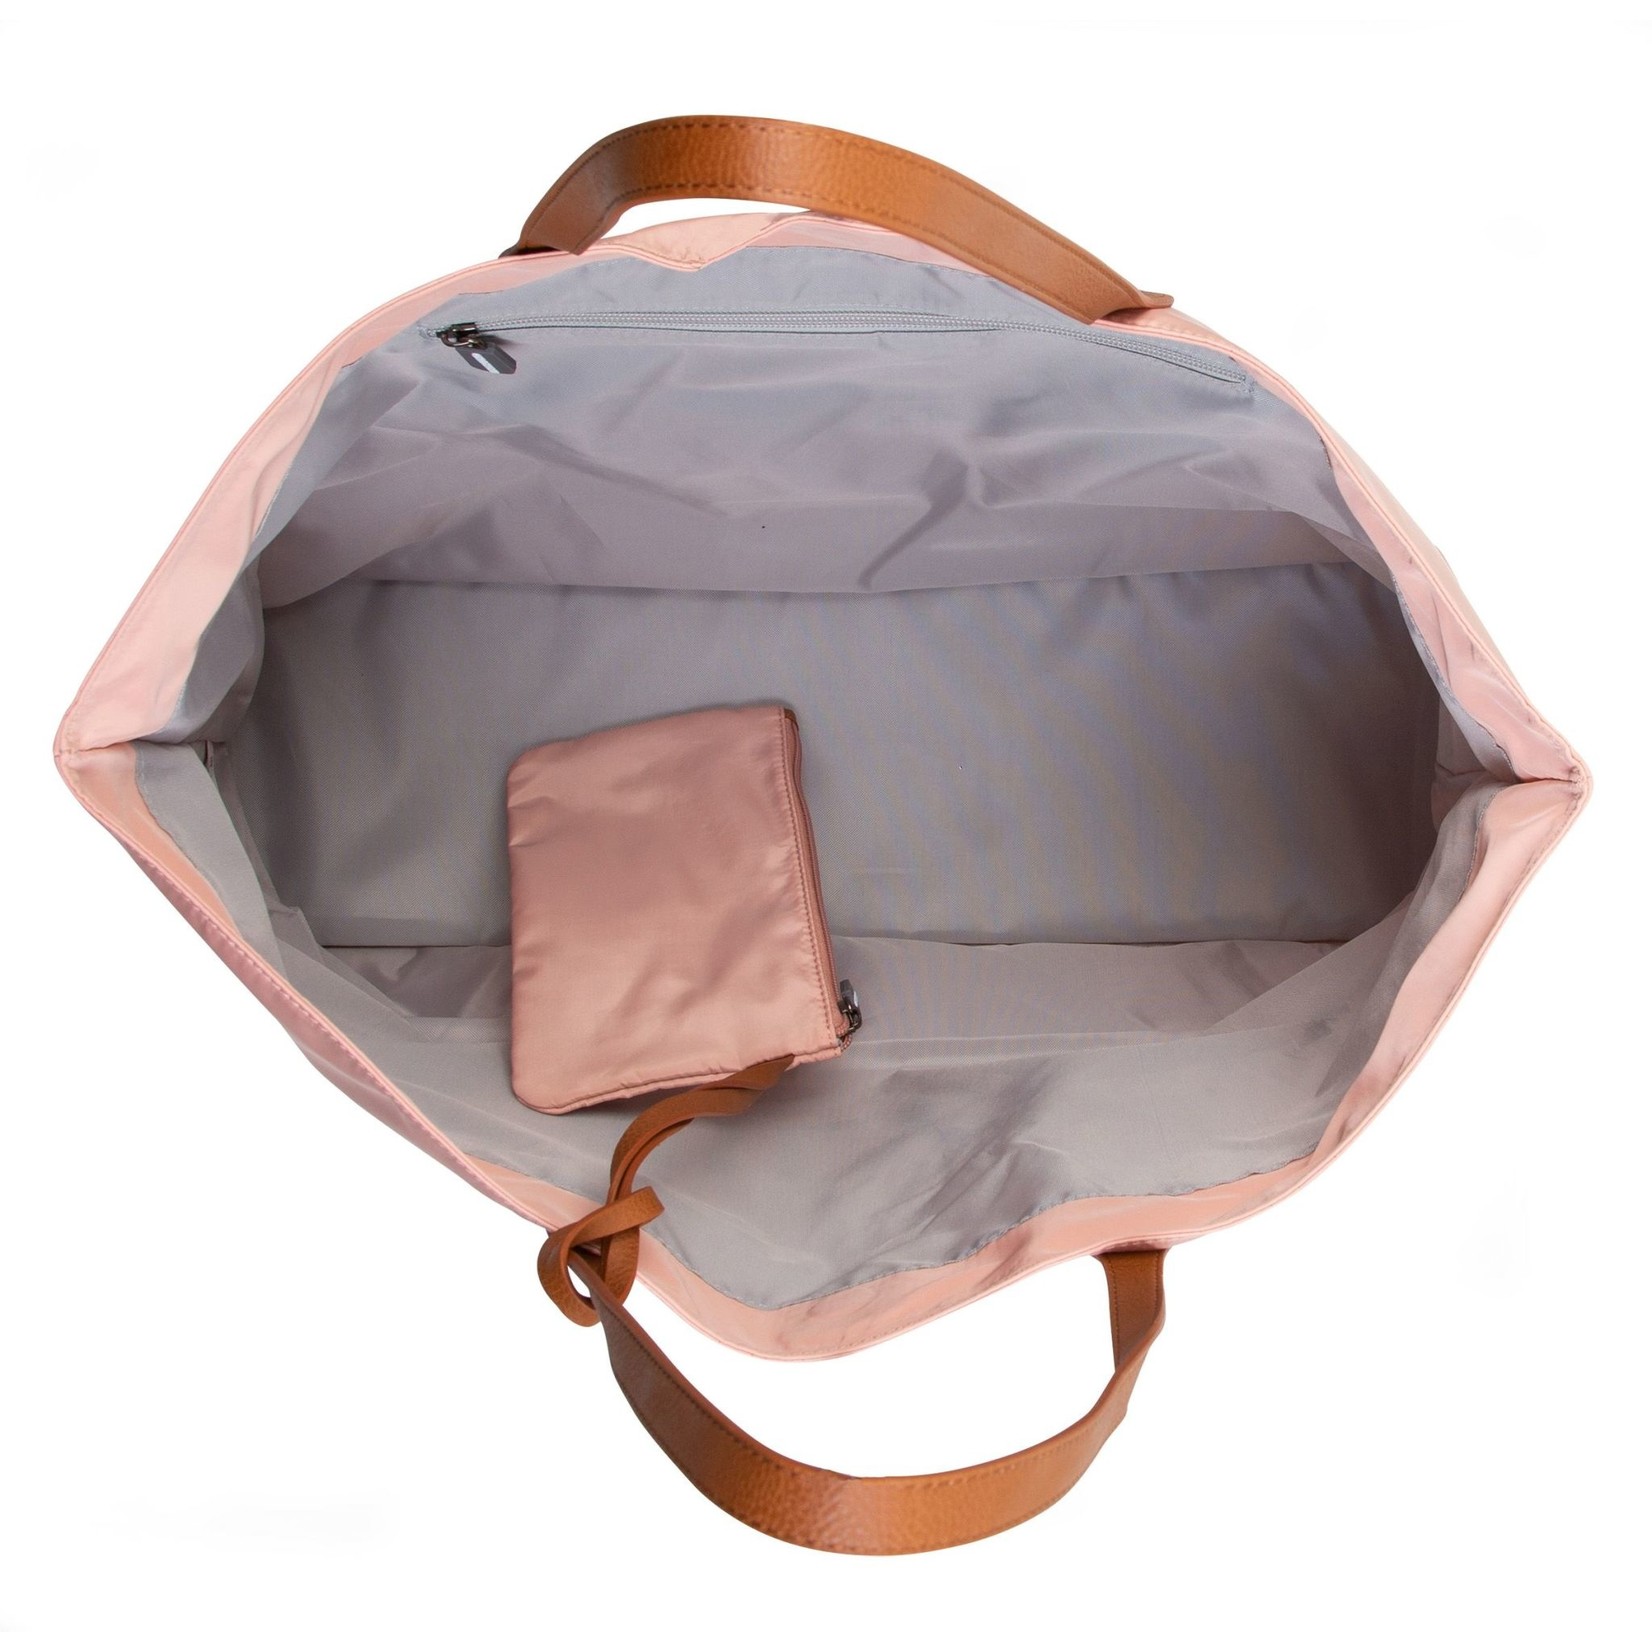 Childhome Family Bag Verzorgingstas - Roze Koper